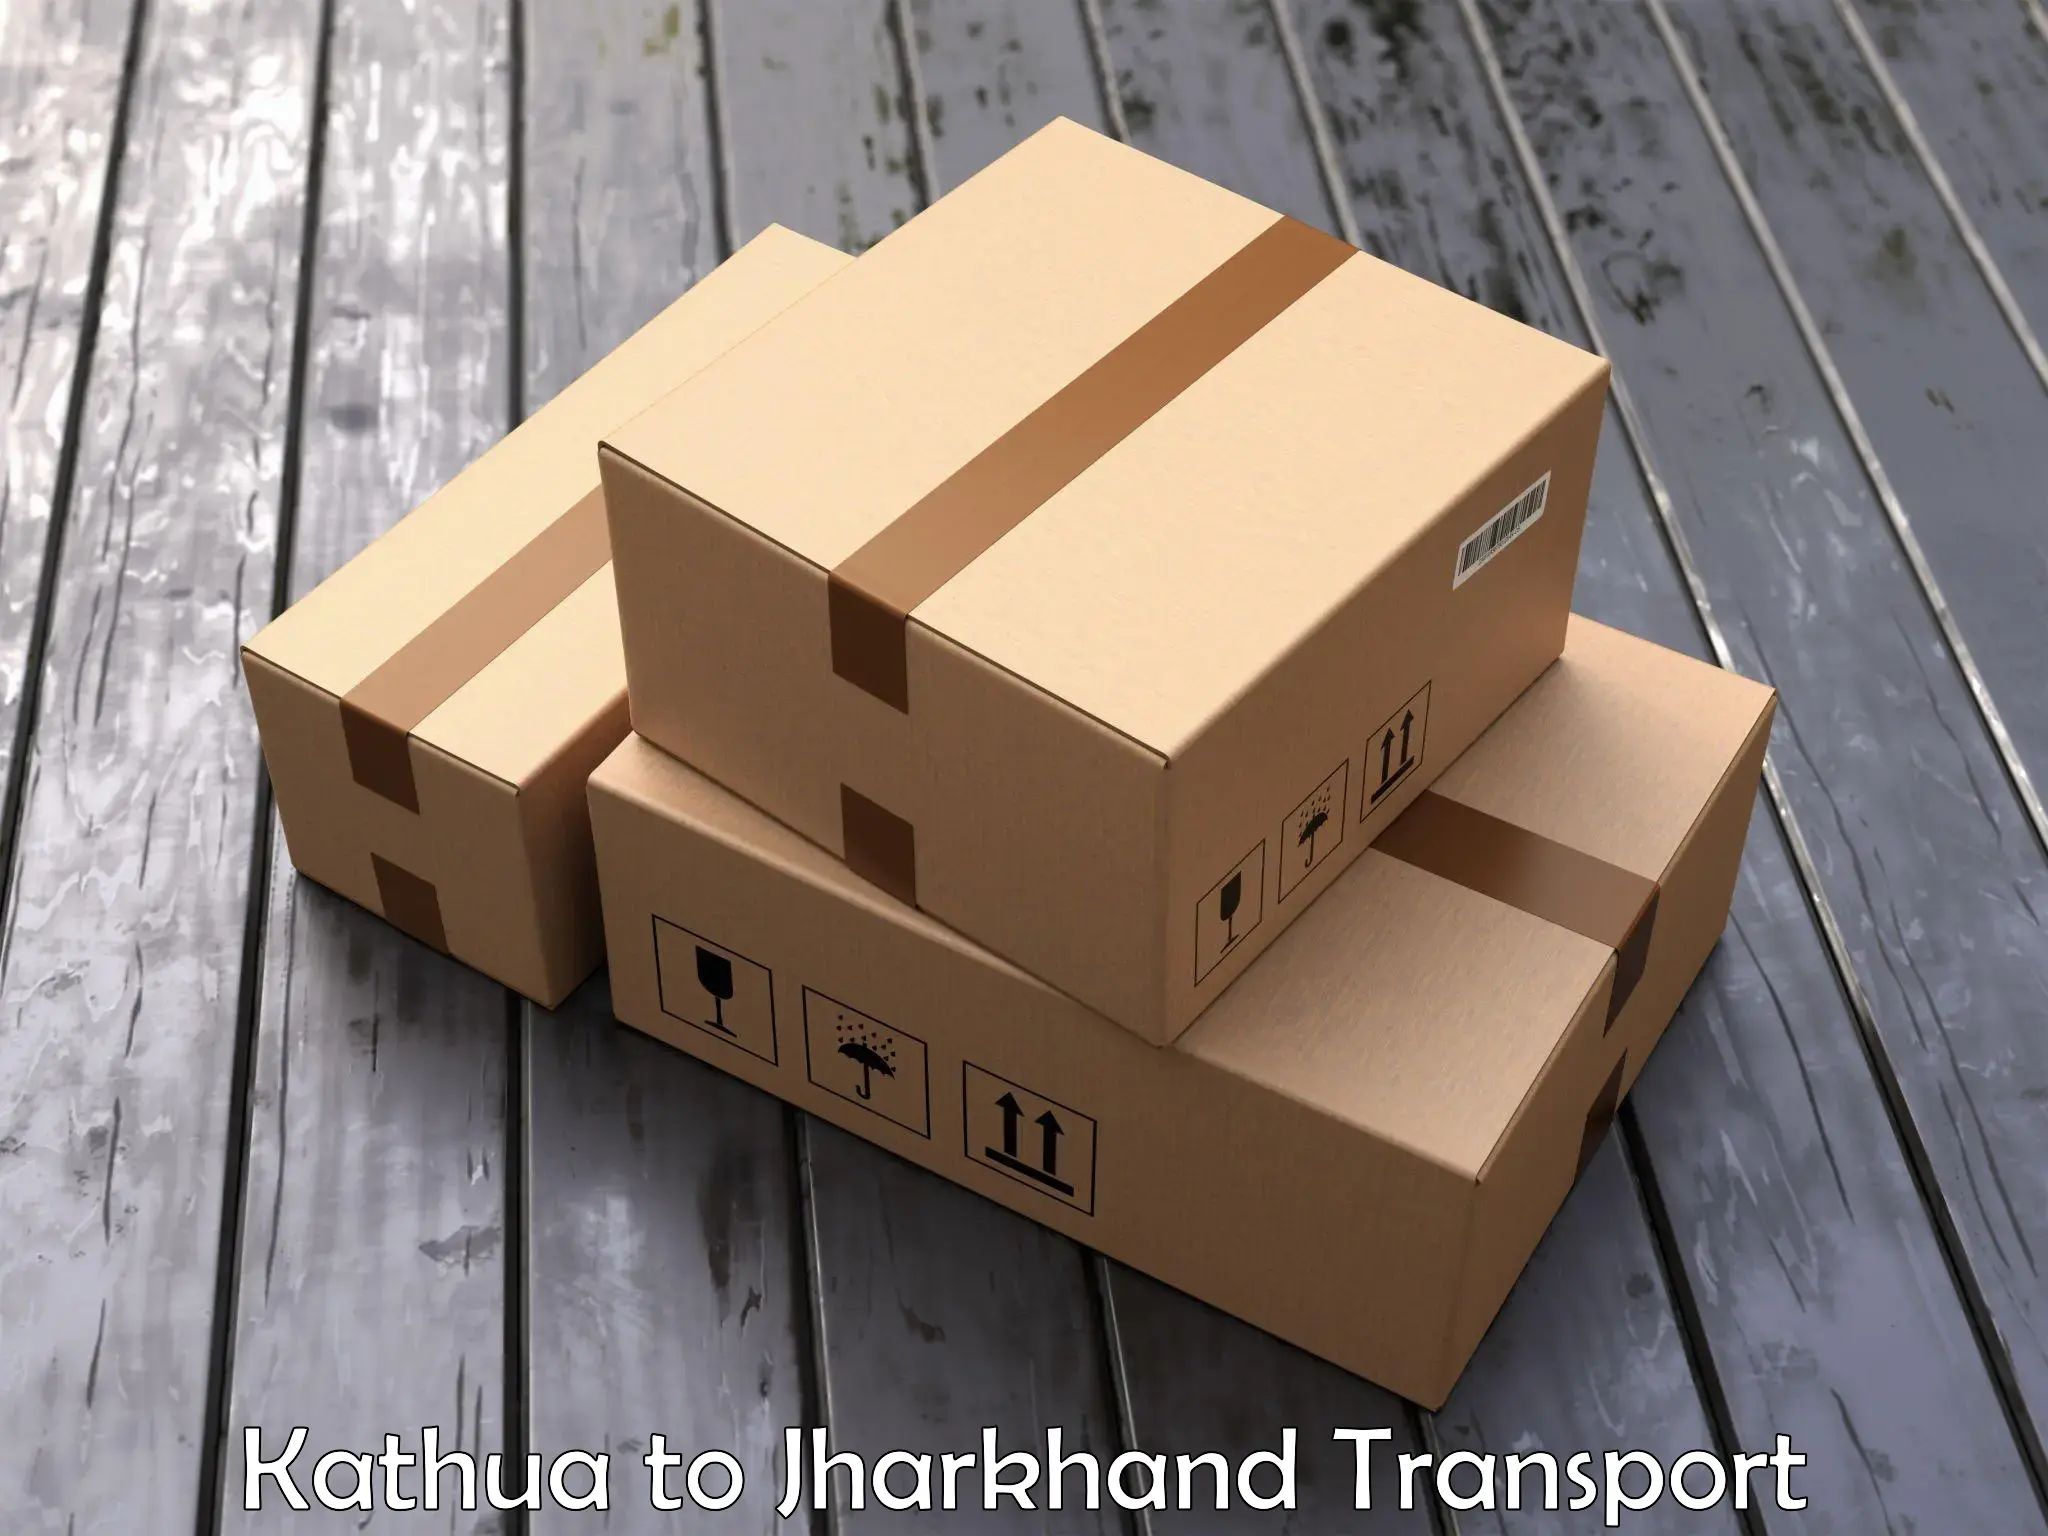 Daily transport service Kathua to Tisri